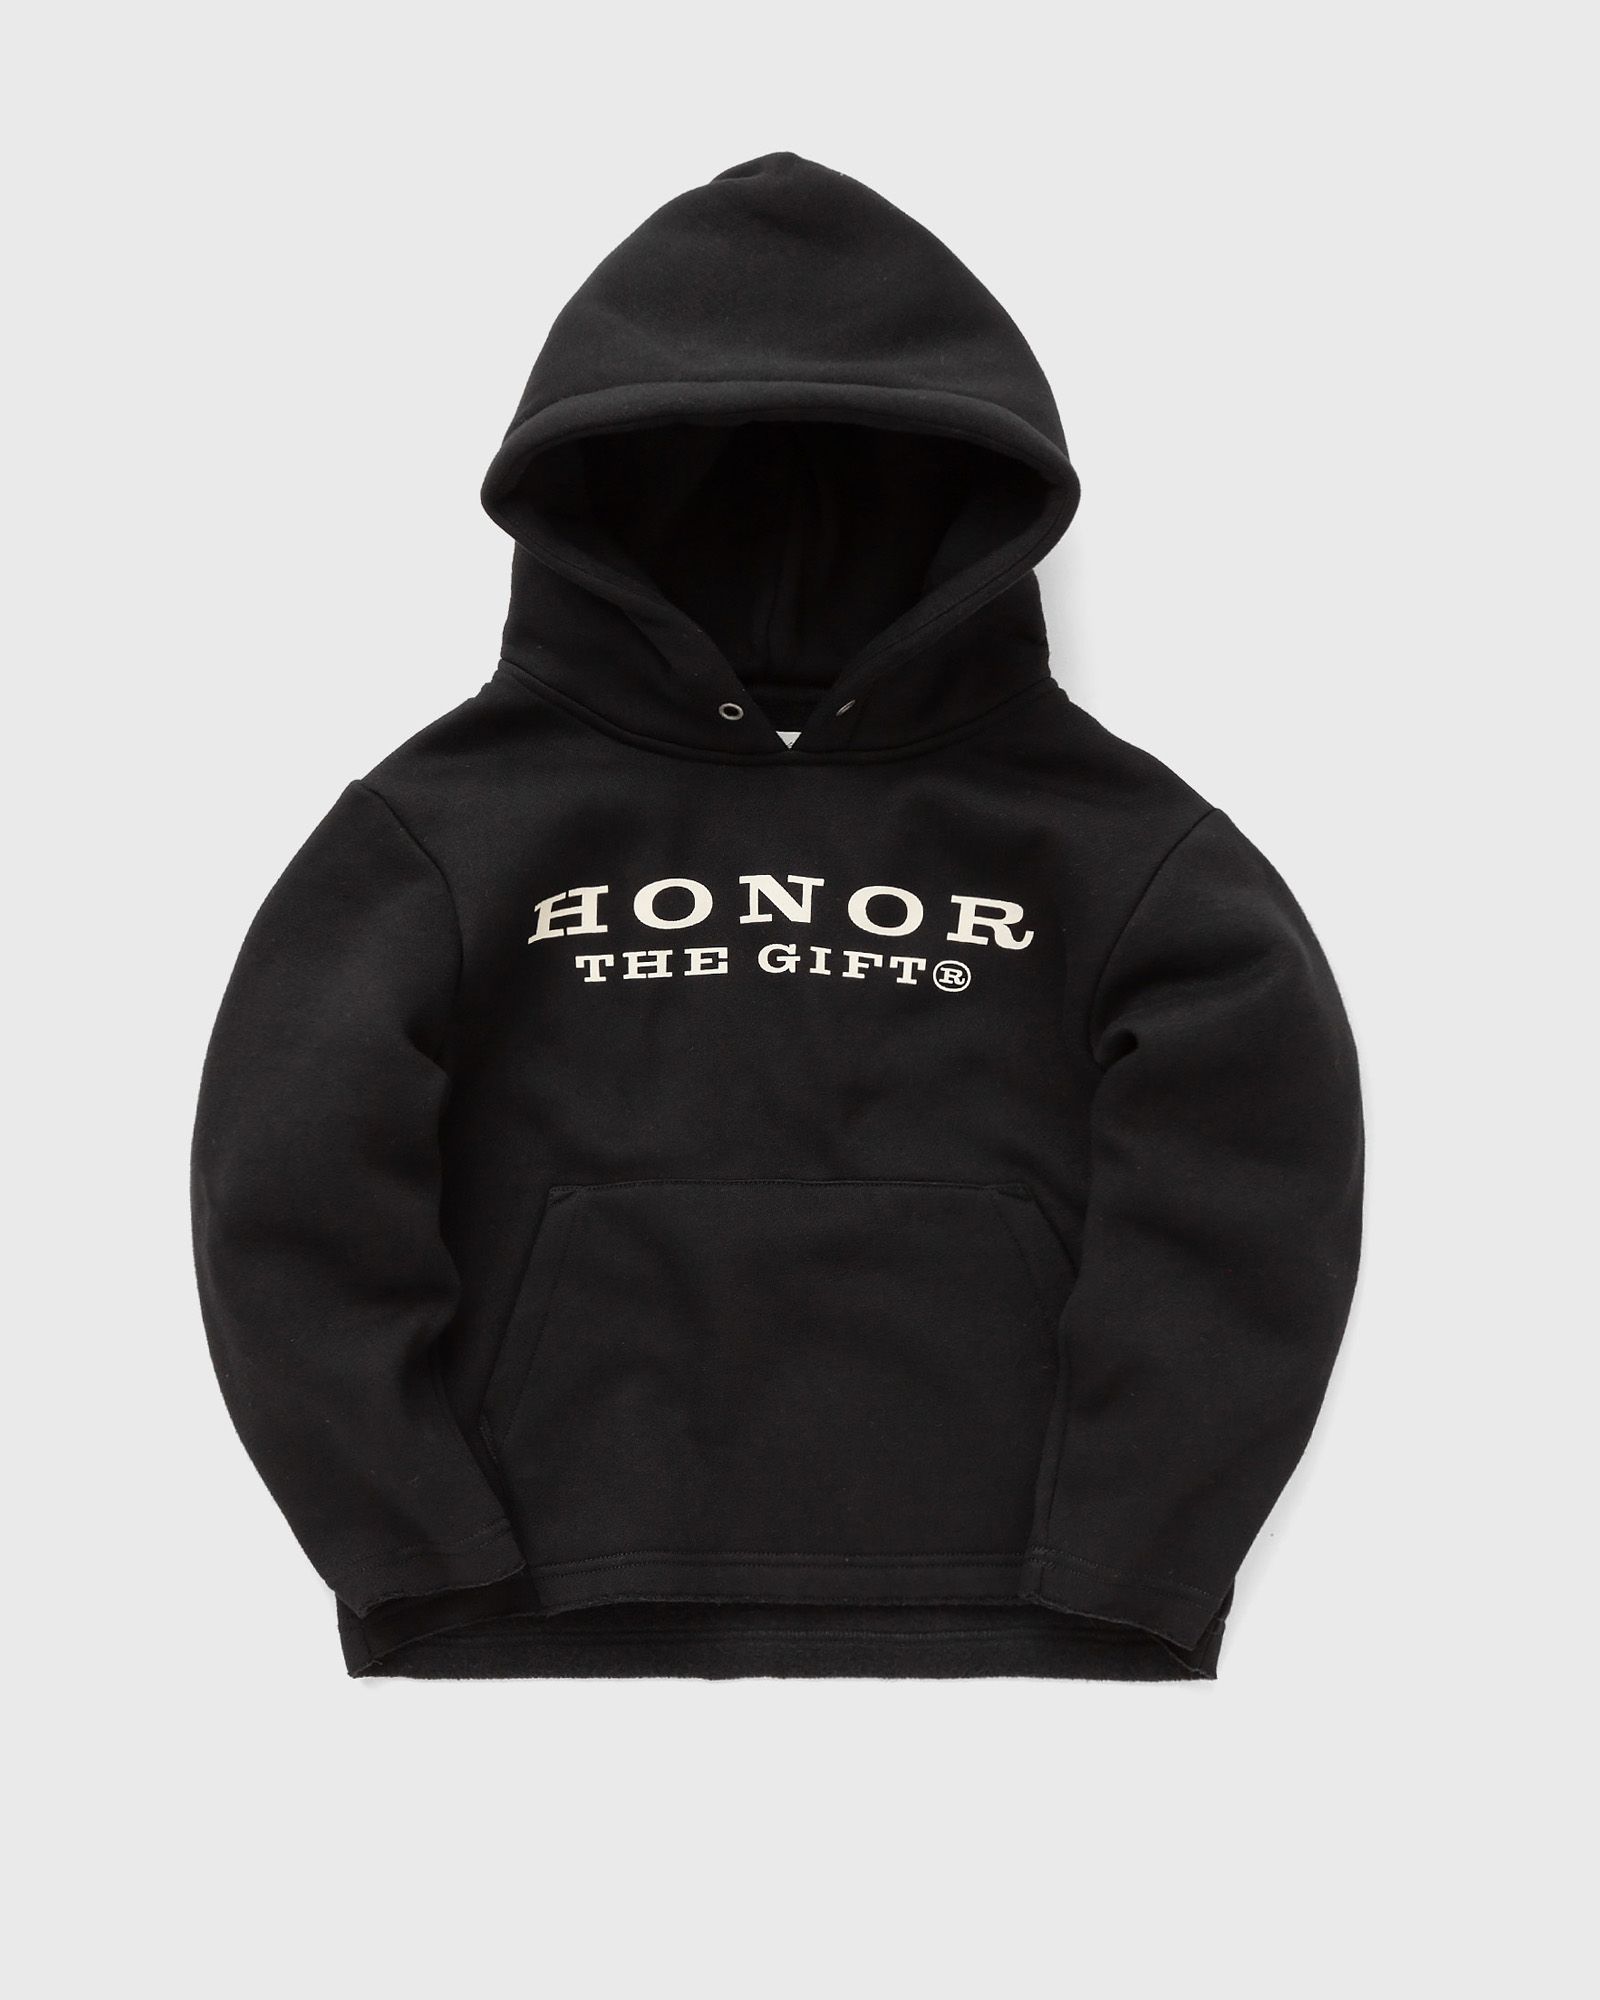 Honor The Gift - hoodie  hoodies black in größe:age 2-4 | eu 92-104